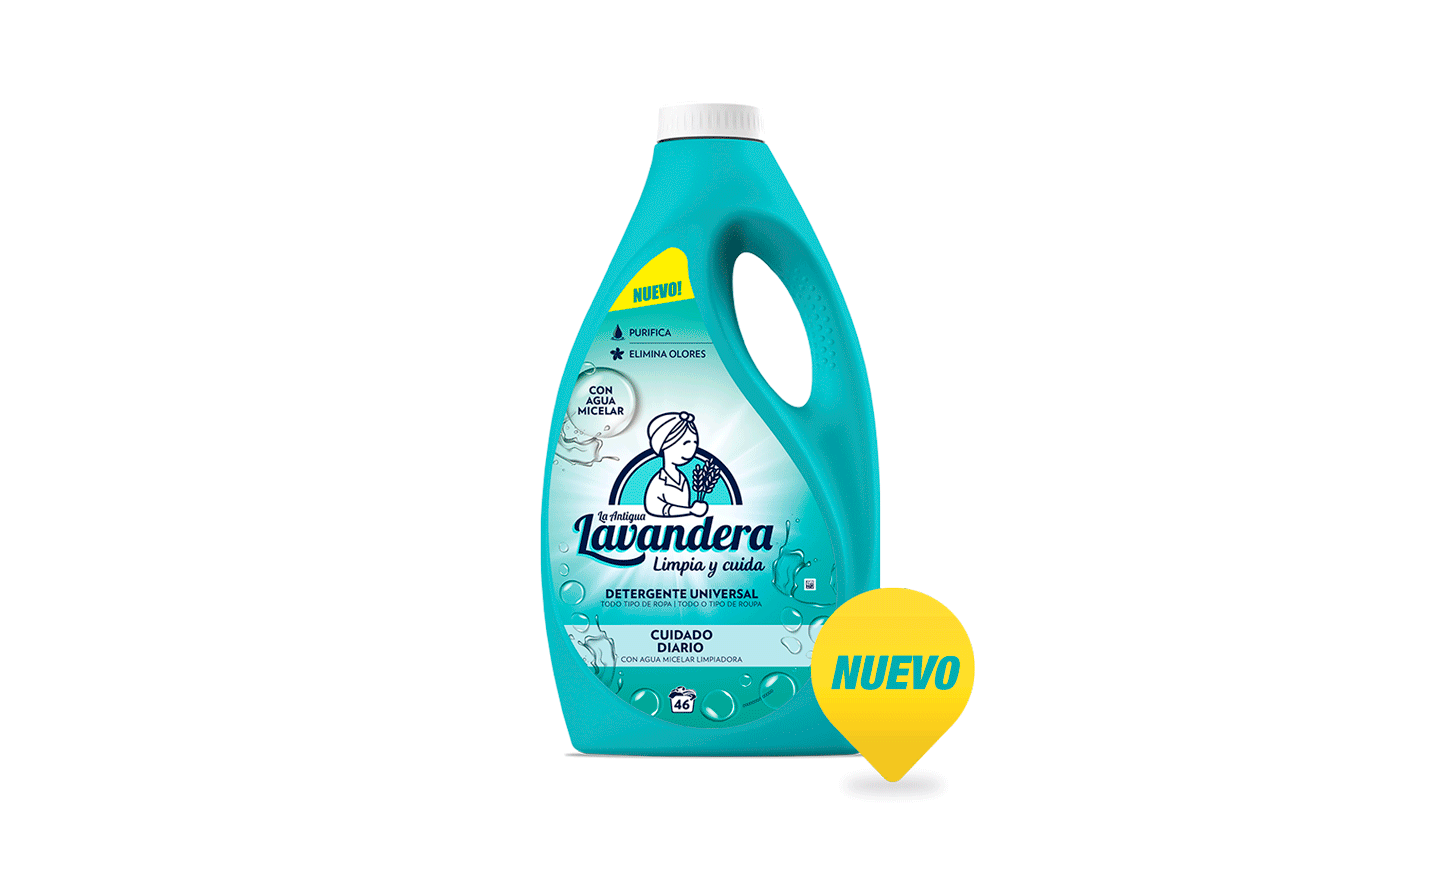 Detergente universal cuidado diario con agua micelar - La Lavandera